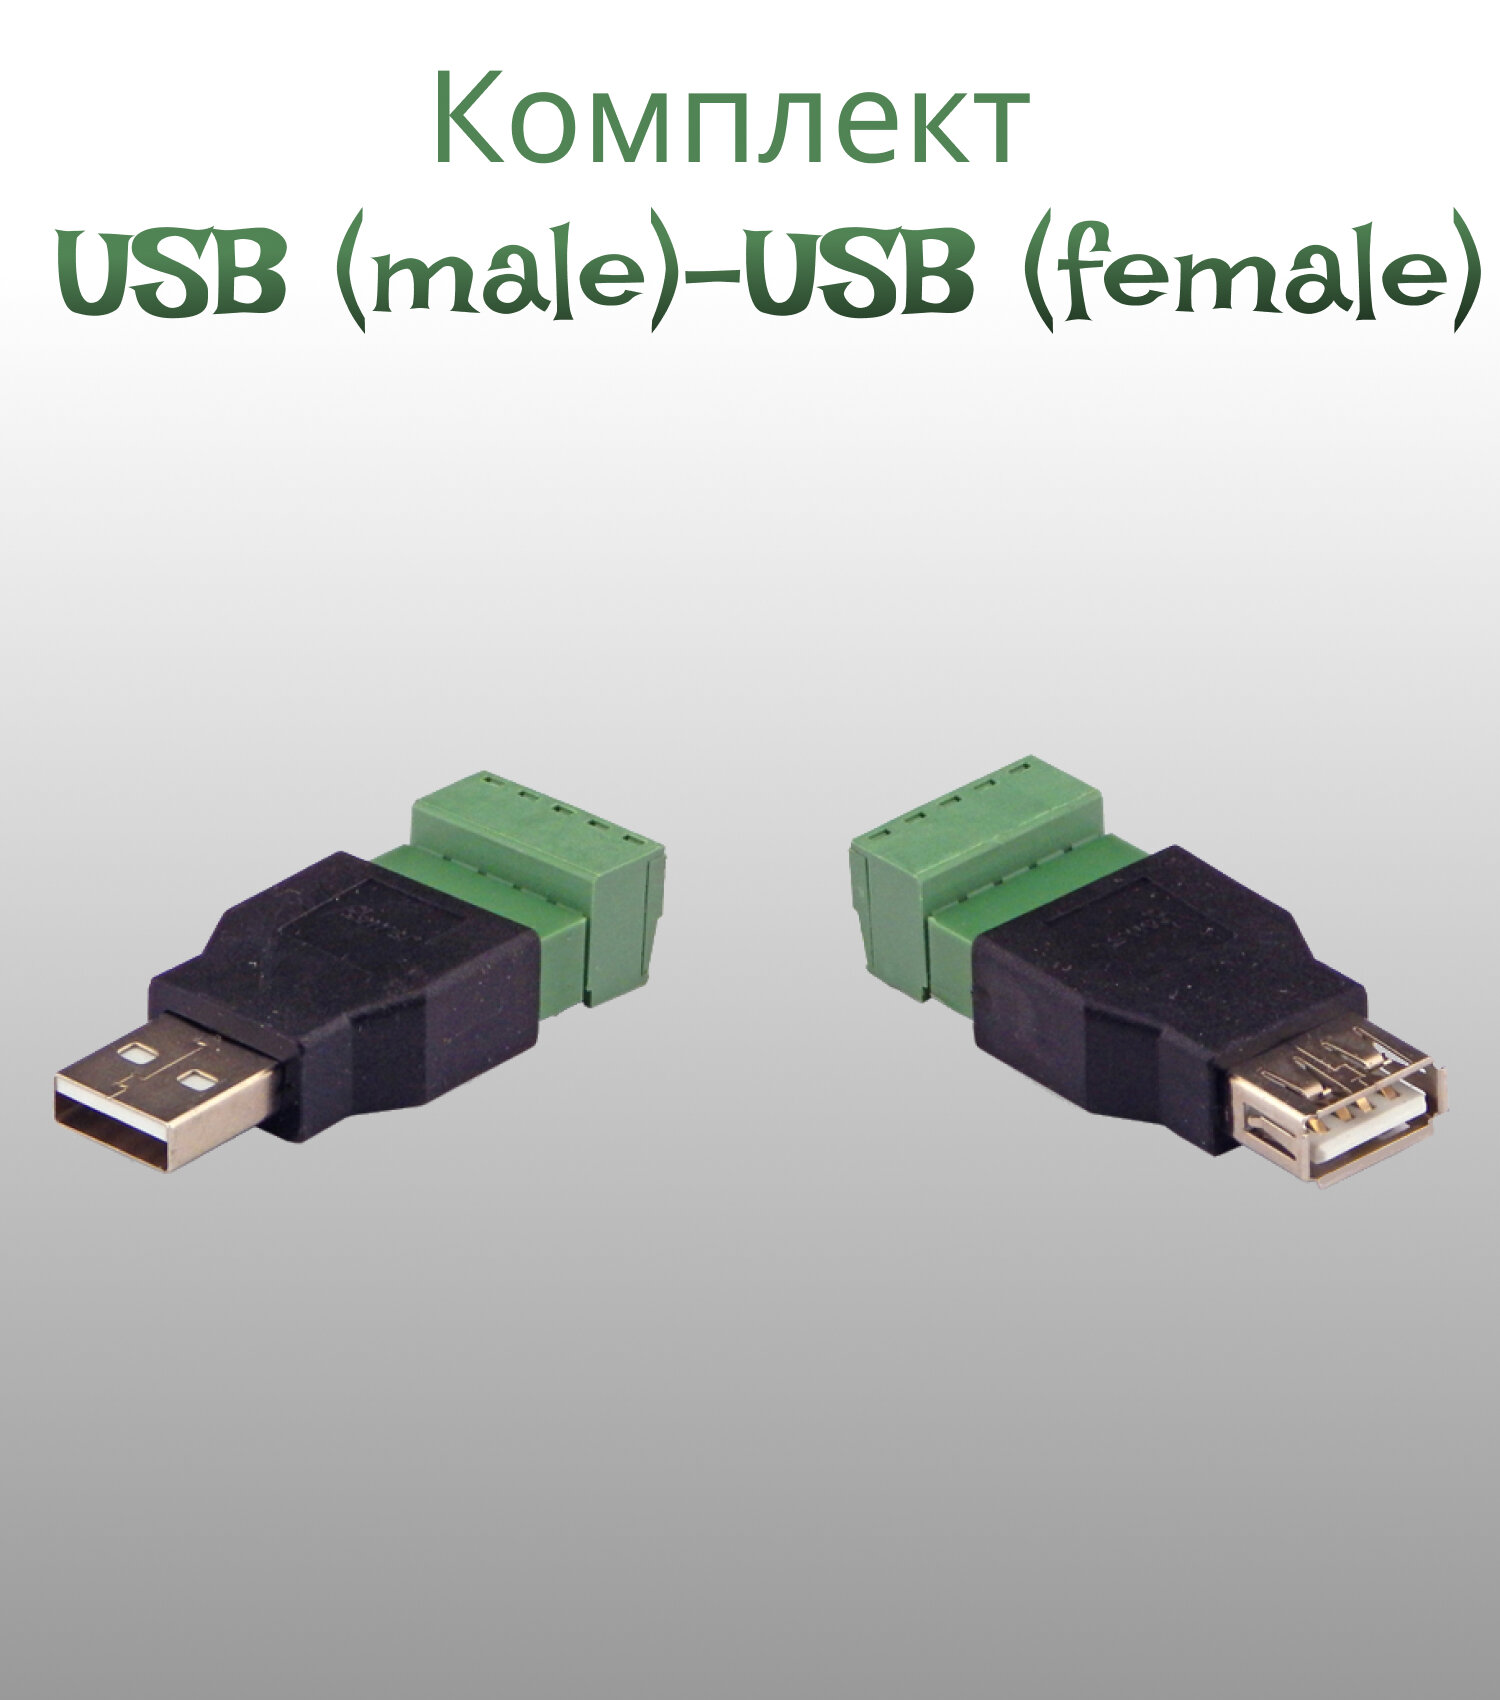 Комплект для передачи USB по витой паре USB (male)-USB (female)